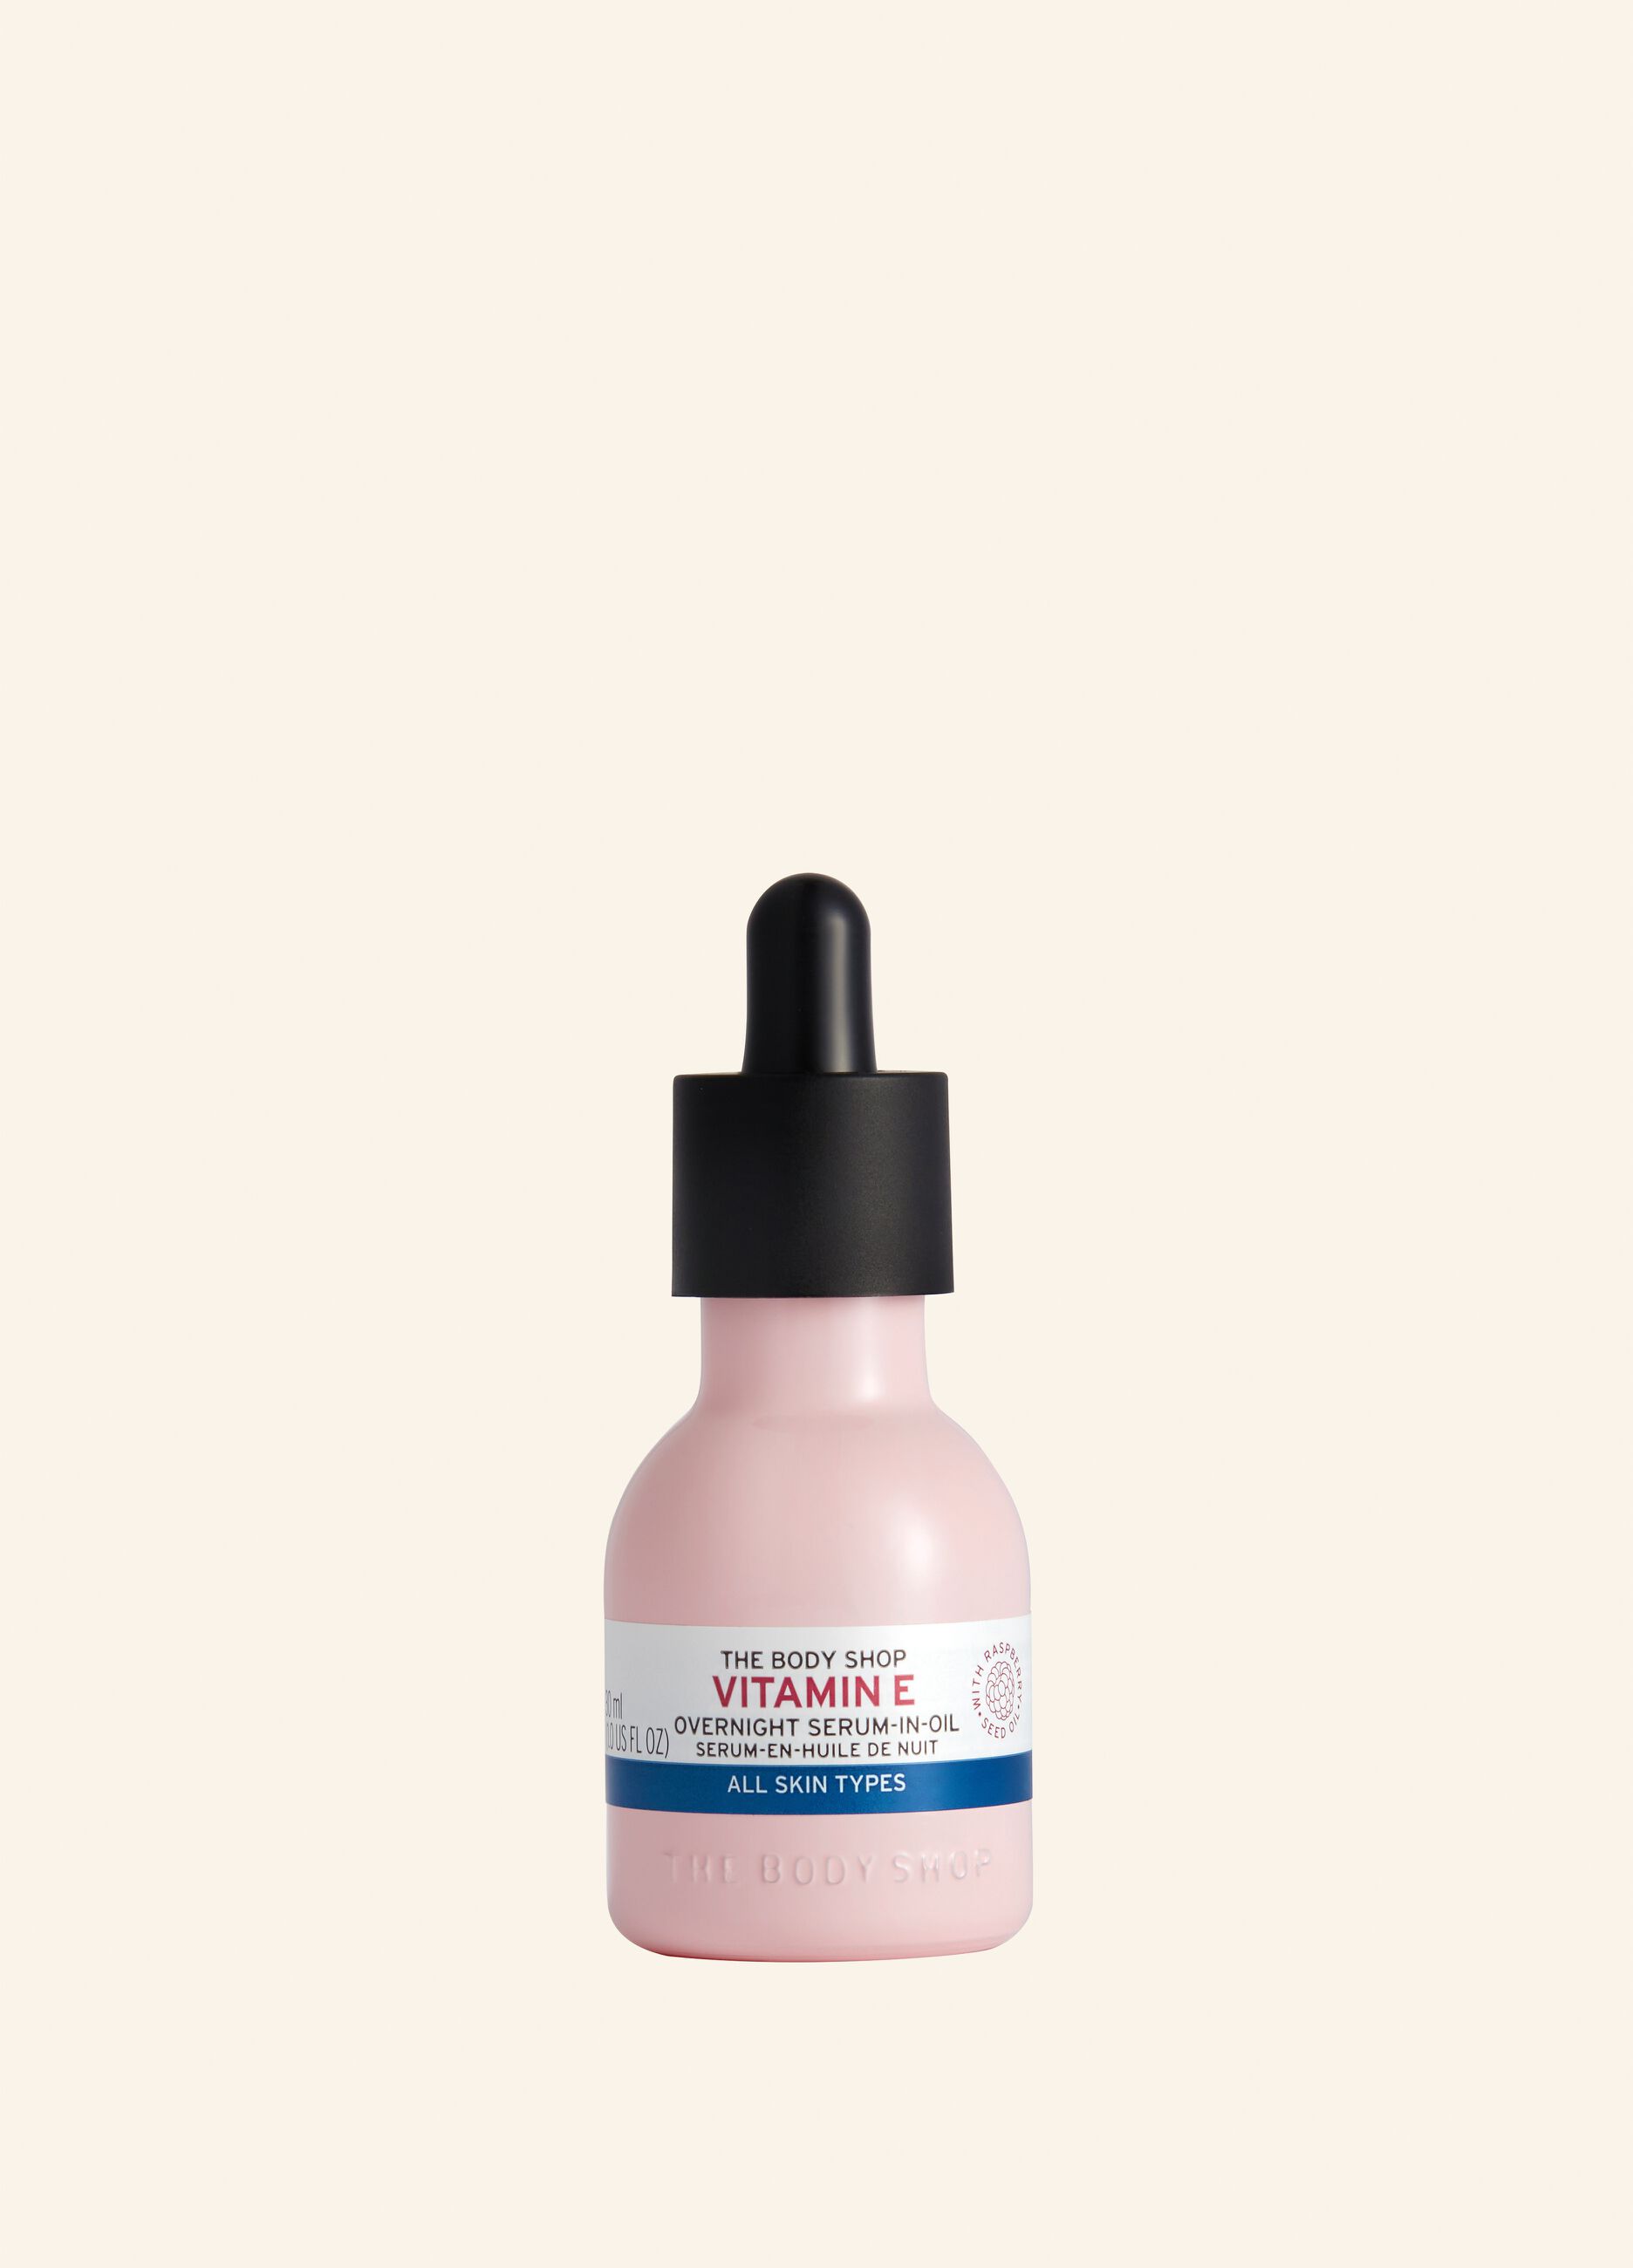 The Body Shop vitamin E night serum oil 30ml